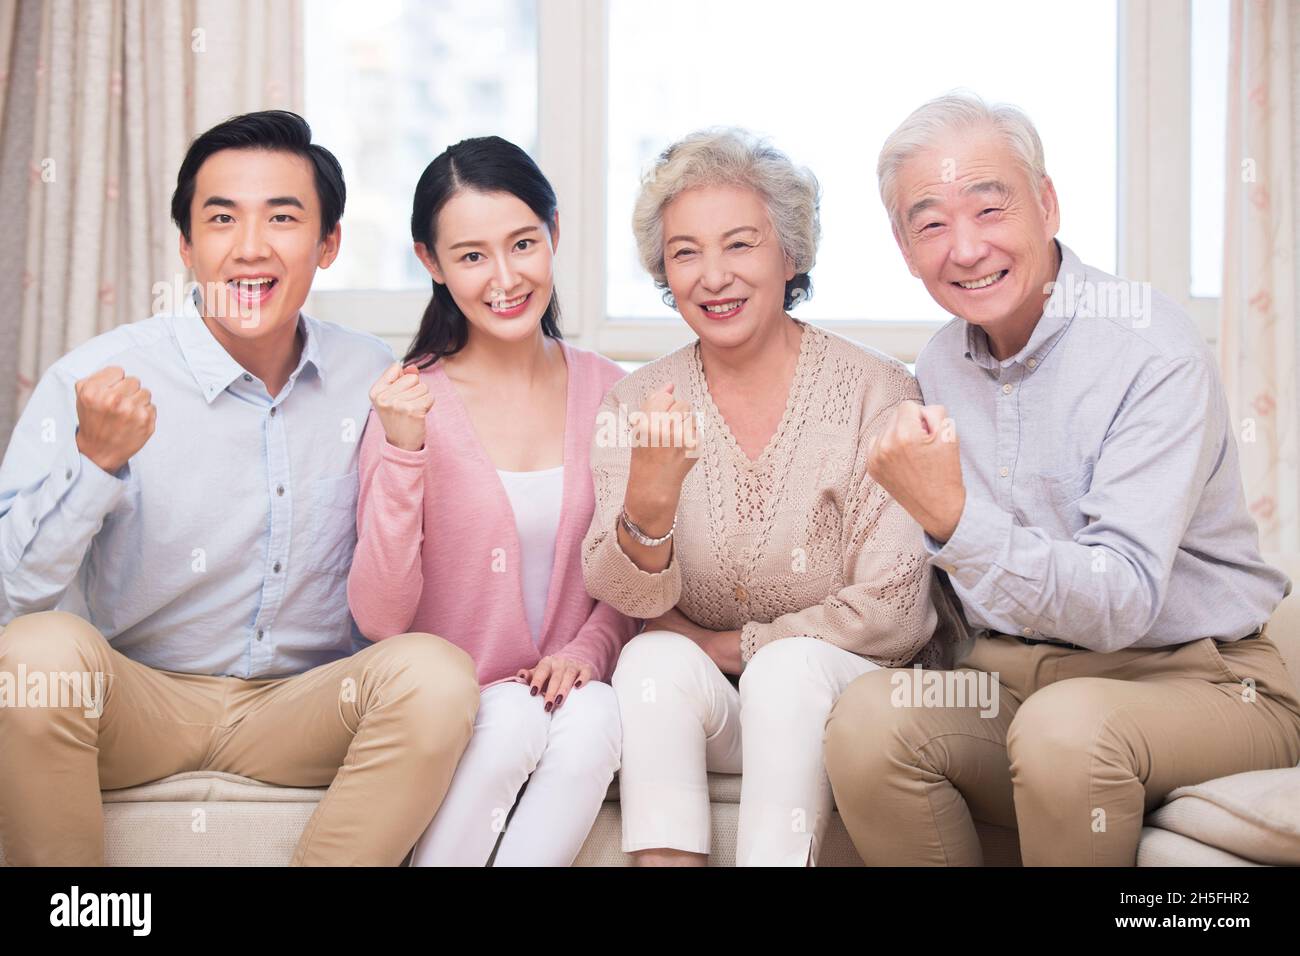 Une famille heureuse et aimante Banque D'Images